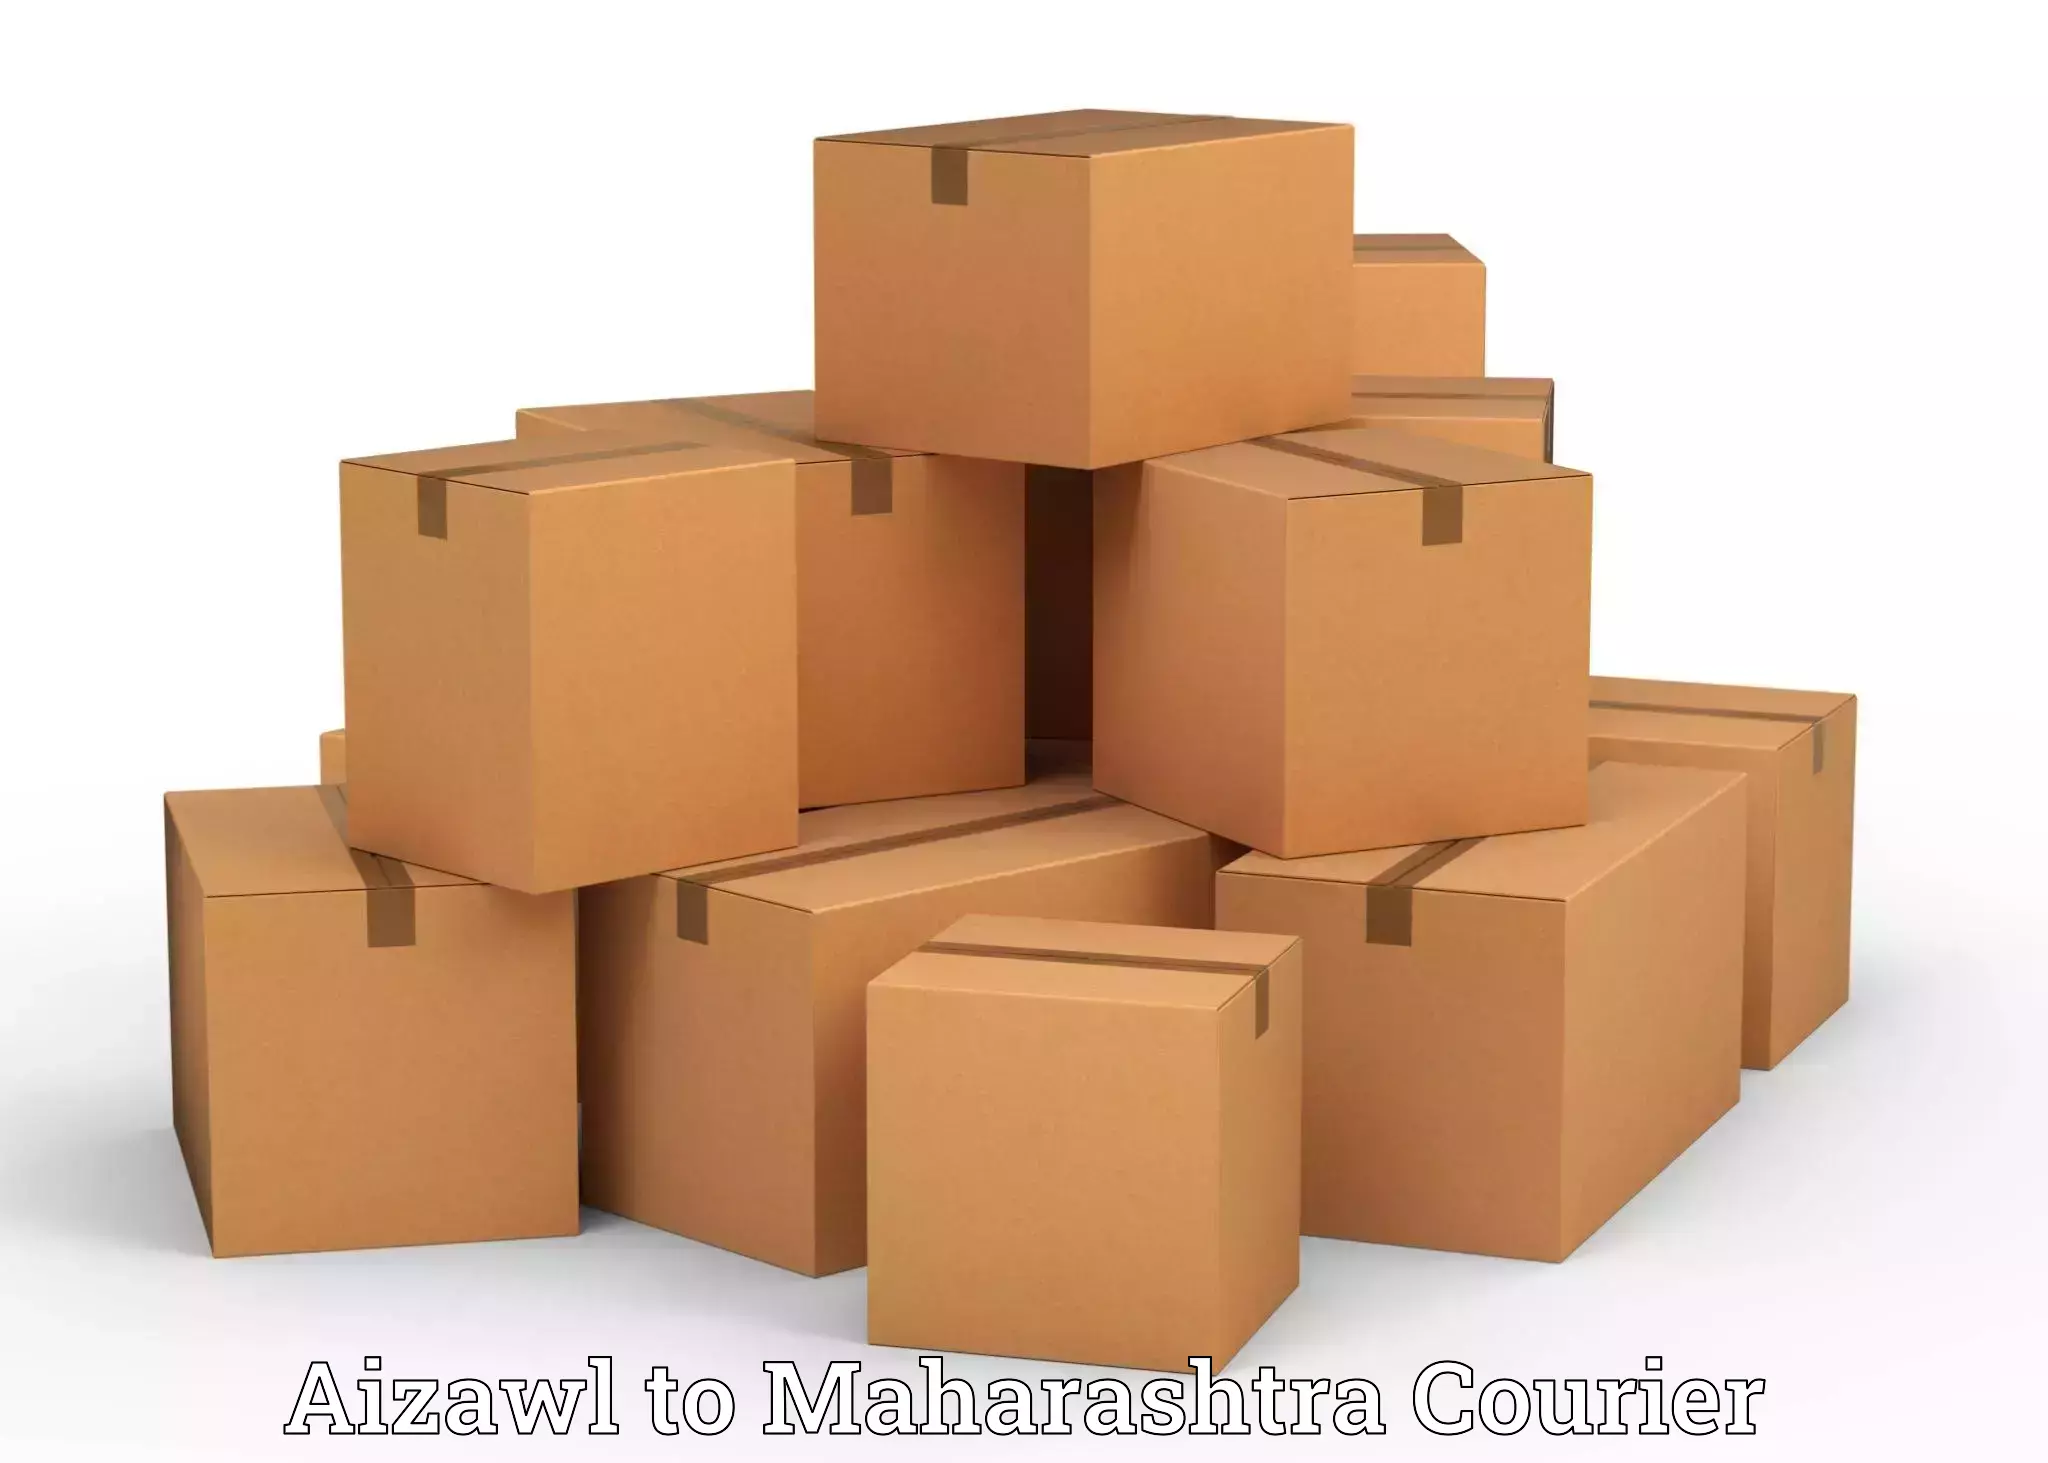 Customized relocation services Aizawl to Maharashtra